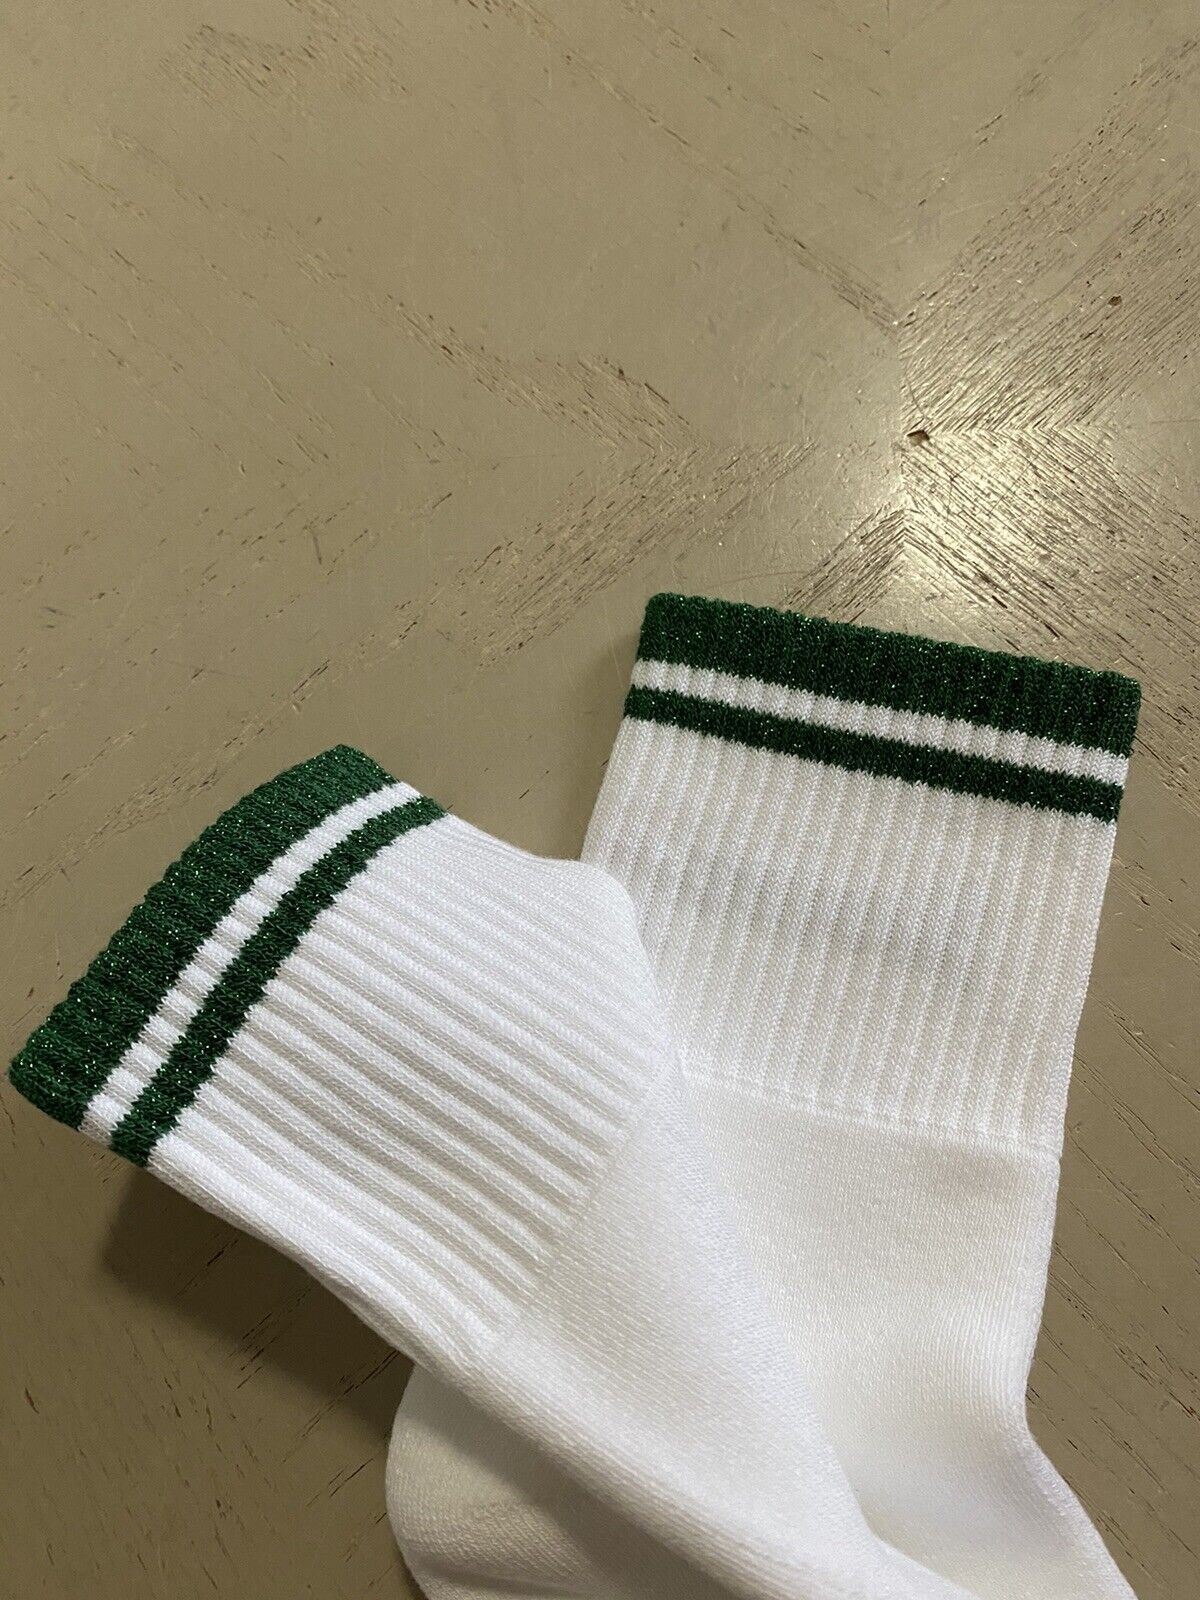 Хлопковые носки NWT Gucci с монограммой Gucci, белые/зеленые, размер M, Италия